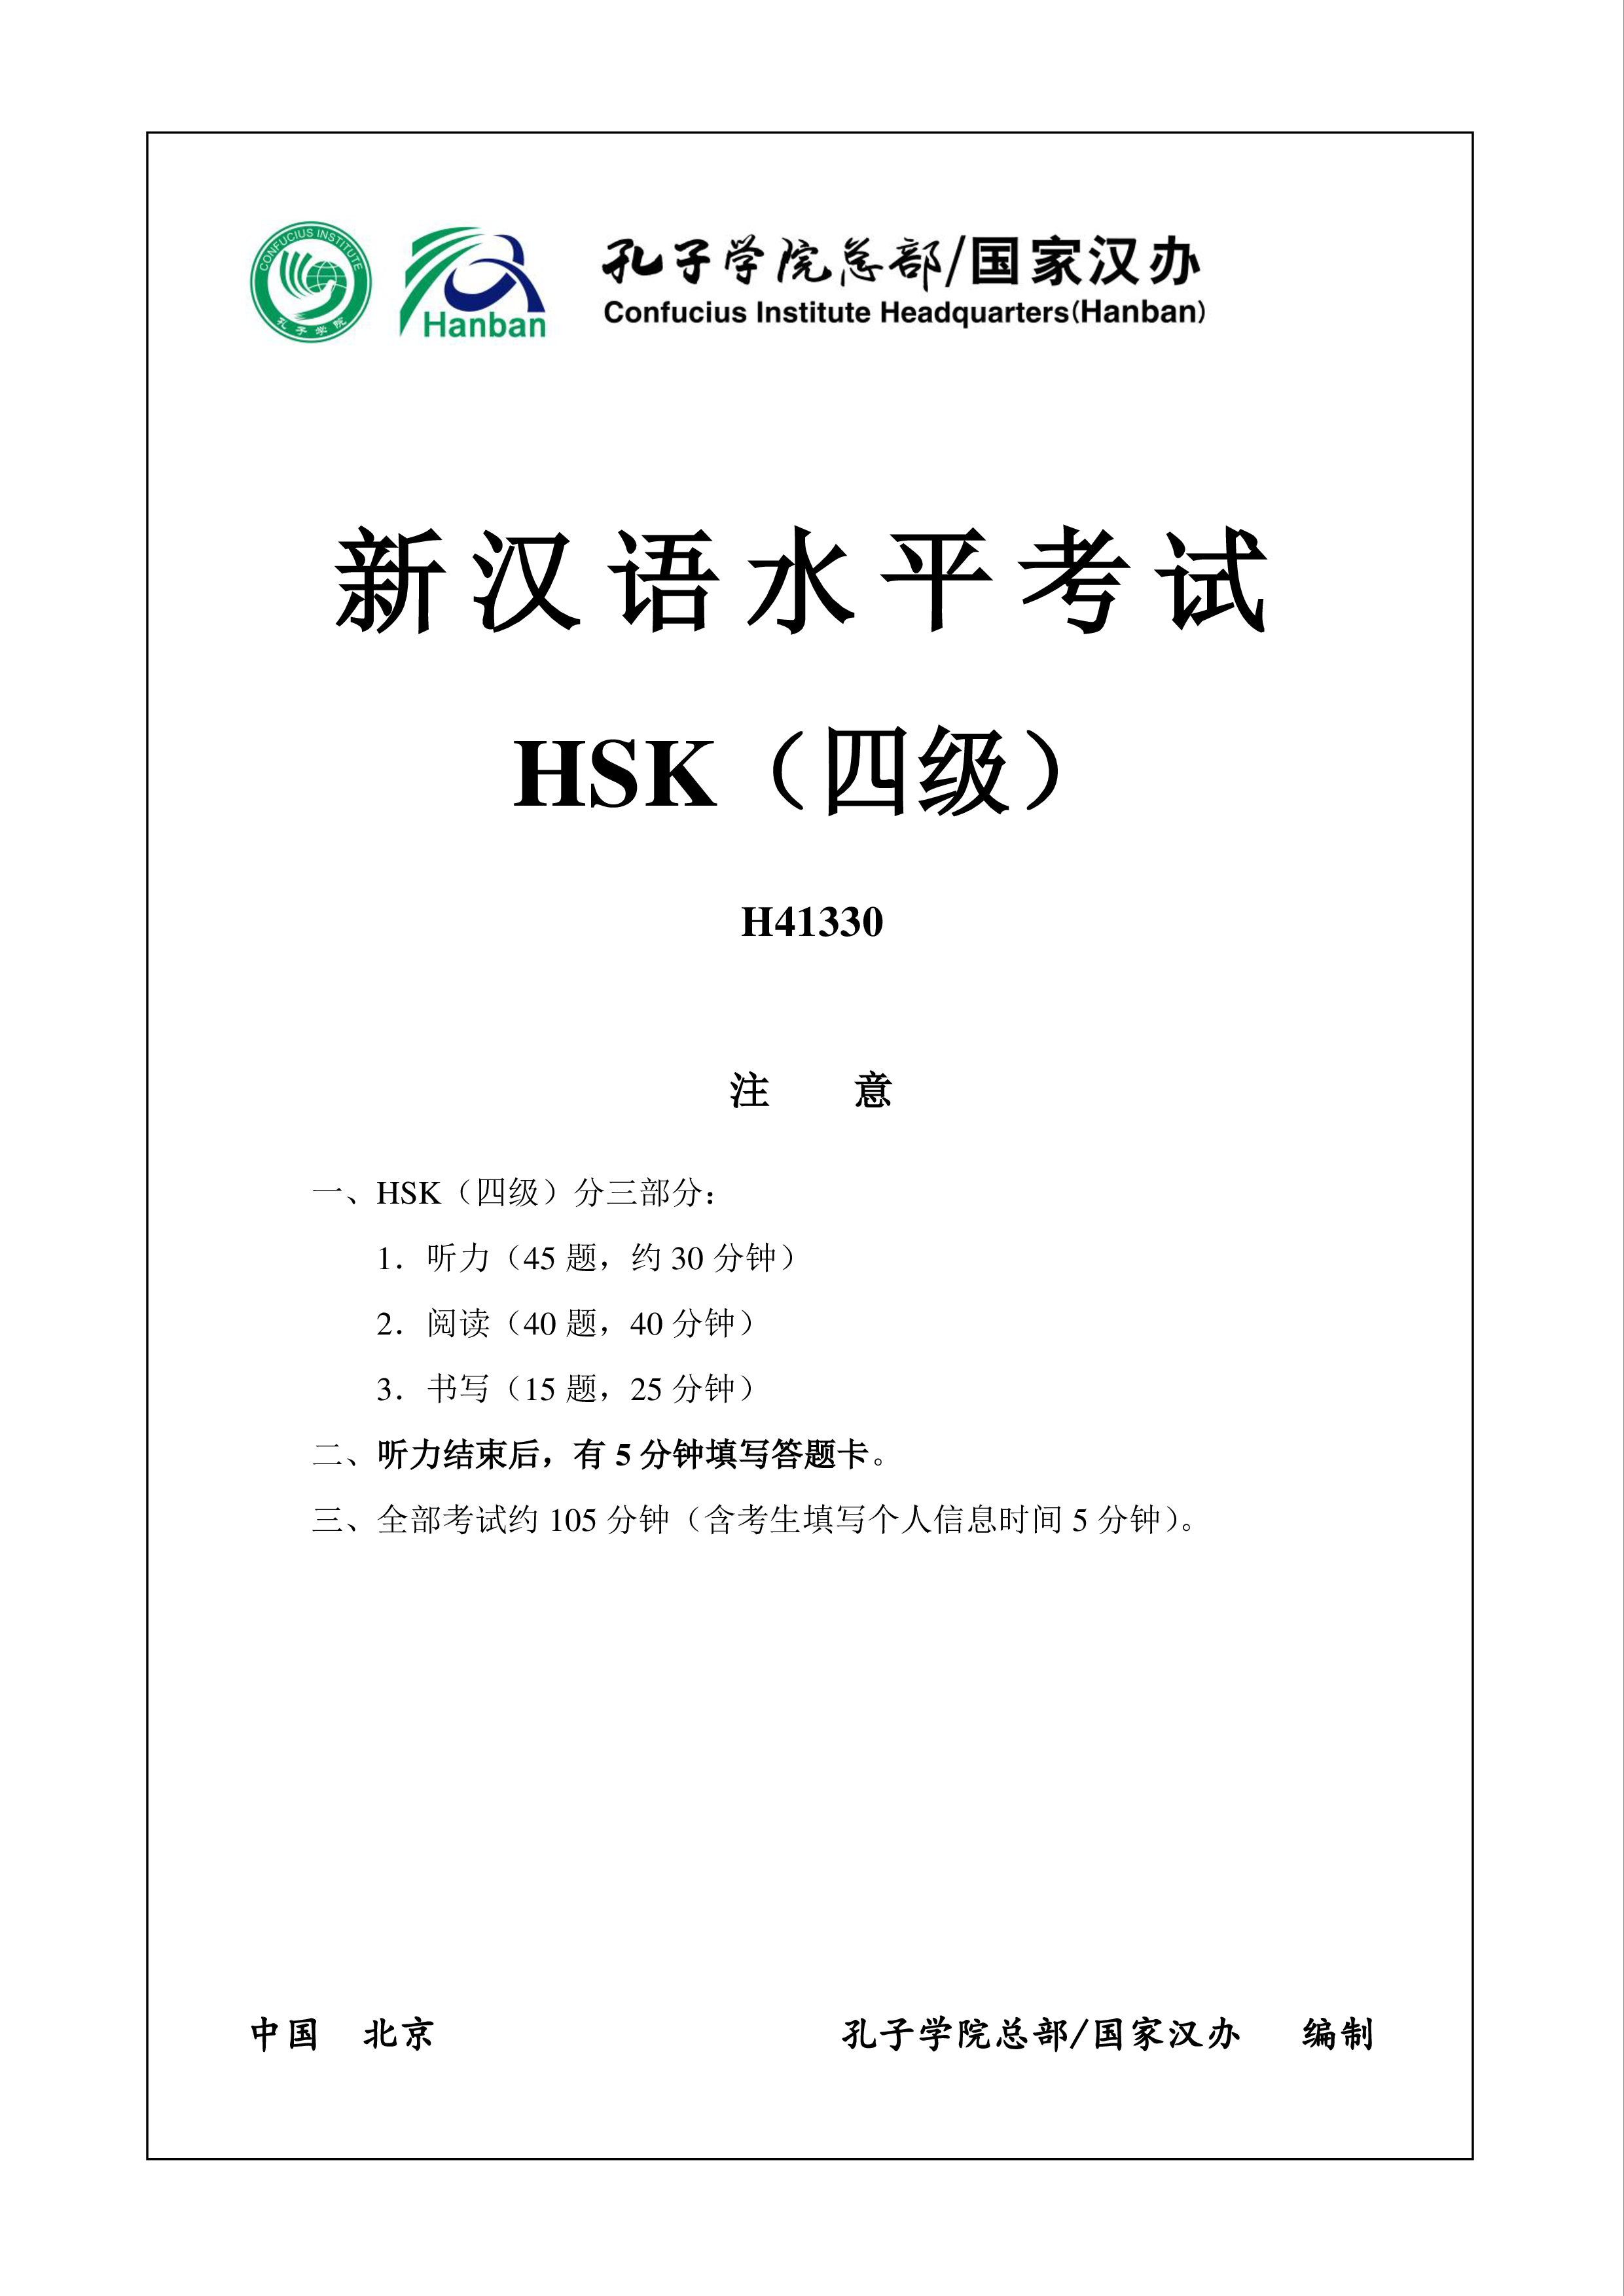 hsk4 chinees examen h41330 plantilla imagen principal